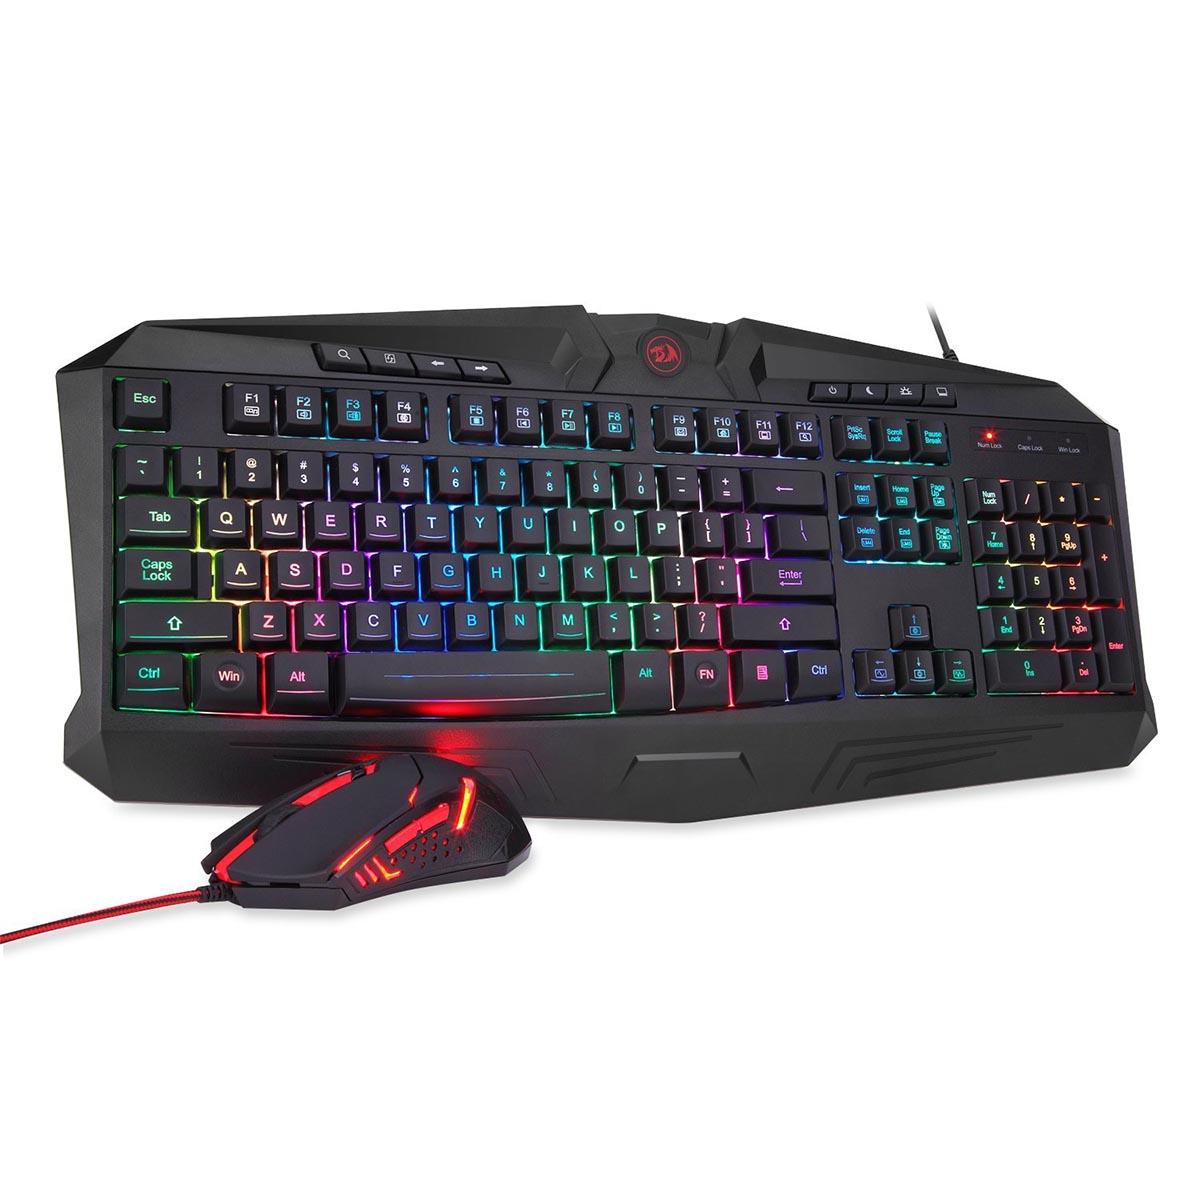 Игровой набор мышь и клавиатура, Redragon S101-1 USB, RGB подсветка, цвет черный